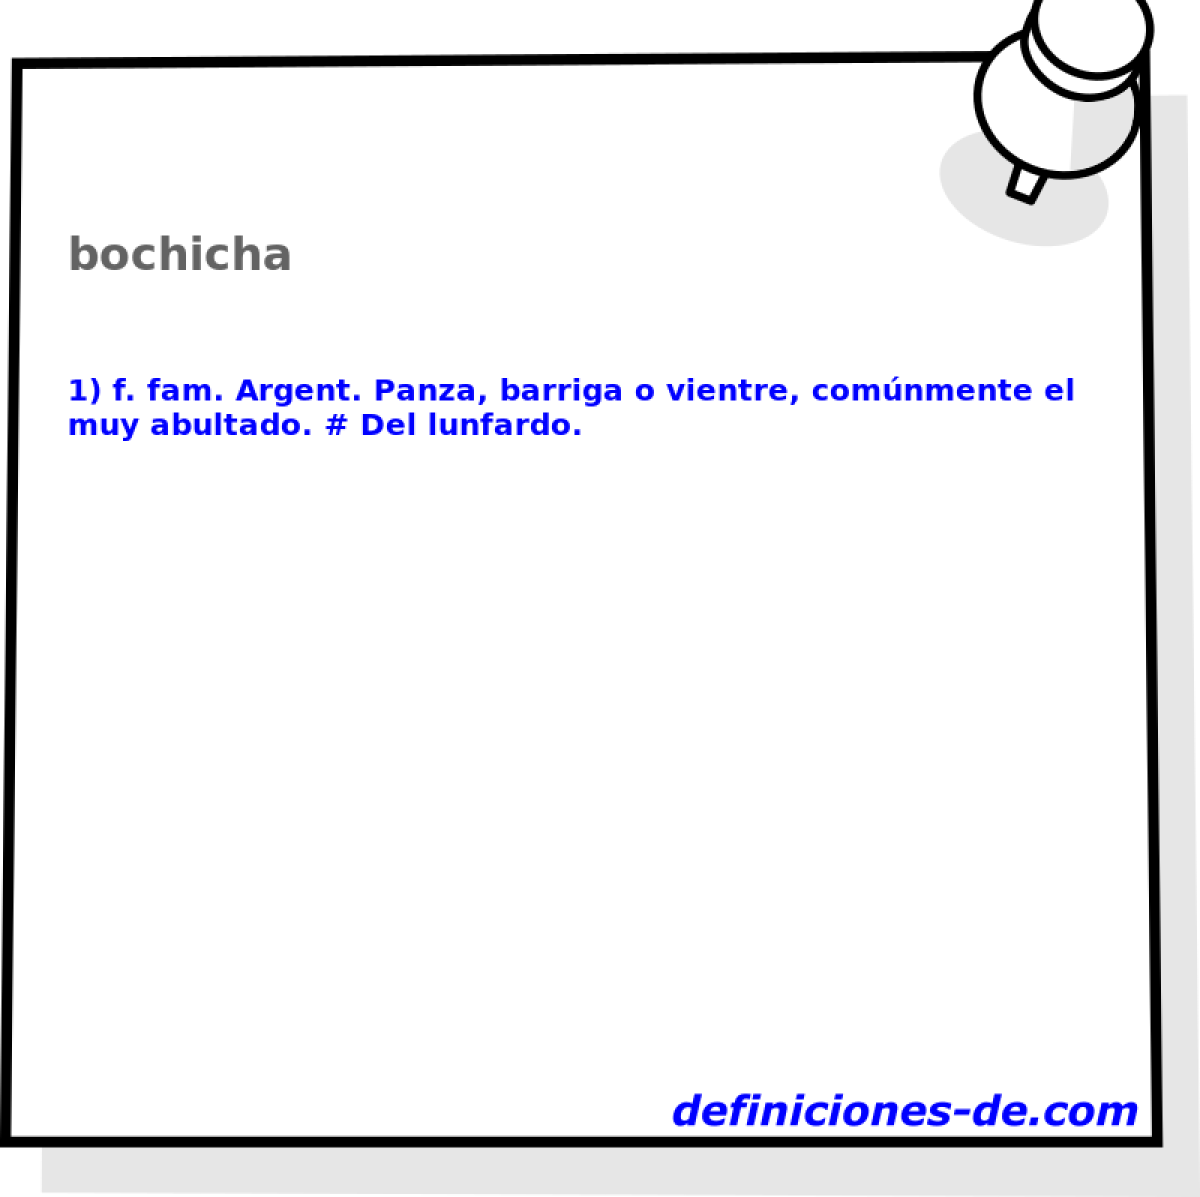 bochicha 